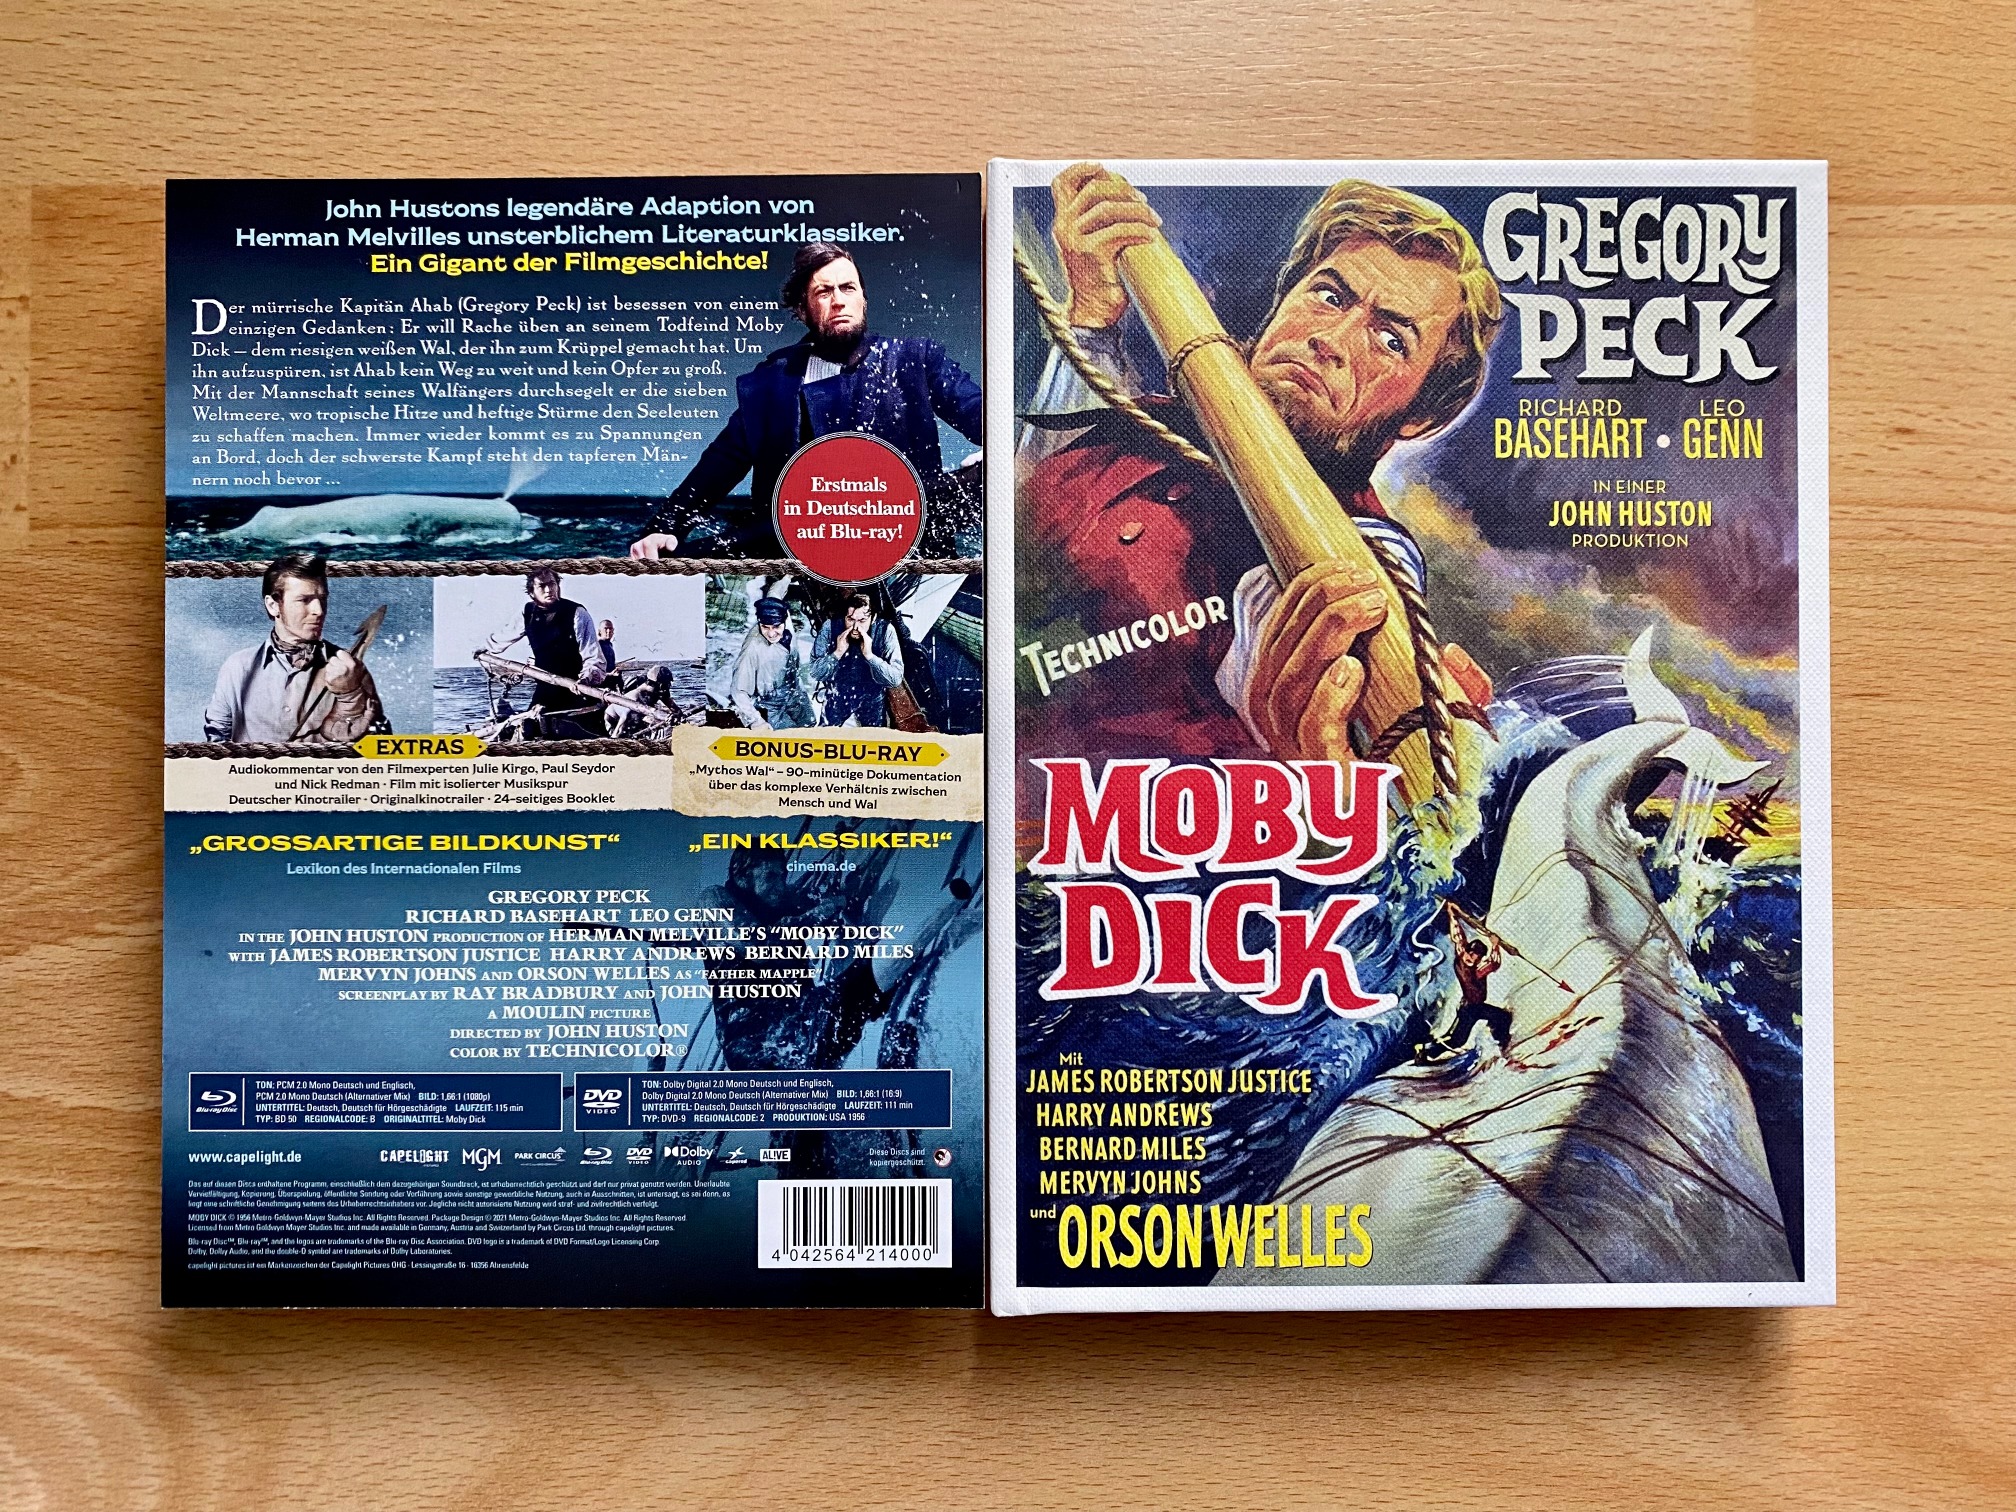 Moby Dick - Mediabook (front J-card) IMG_6904.jpg